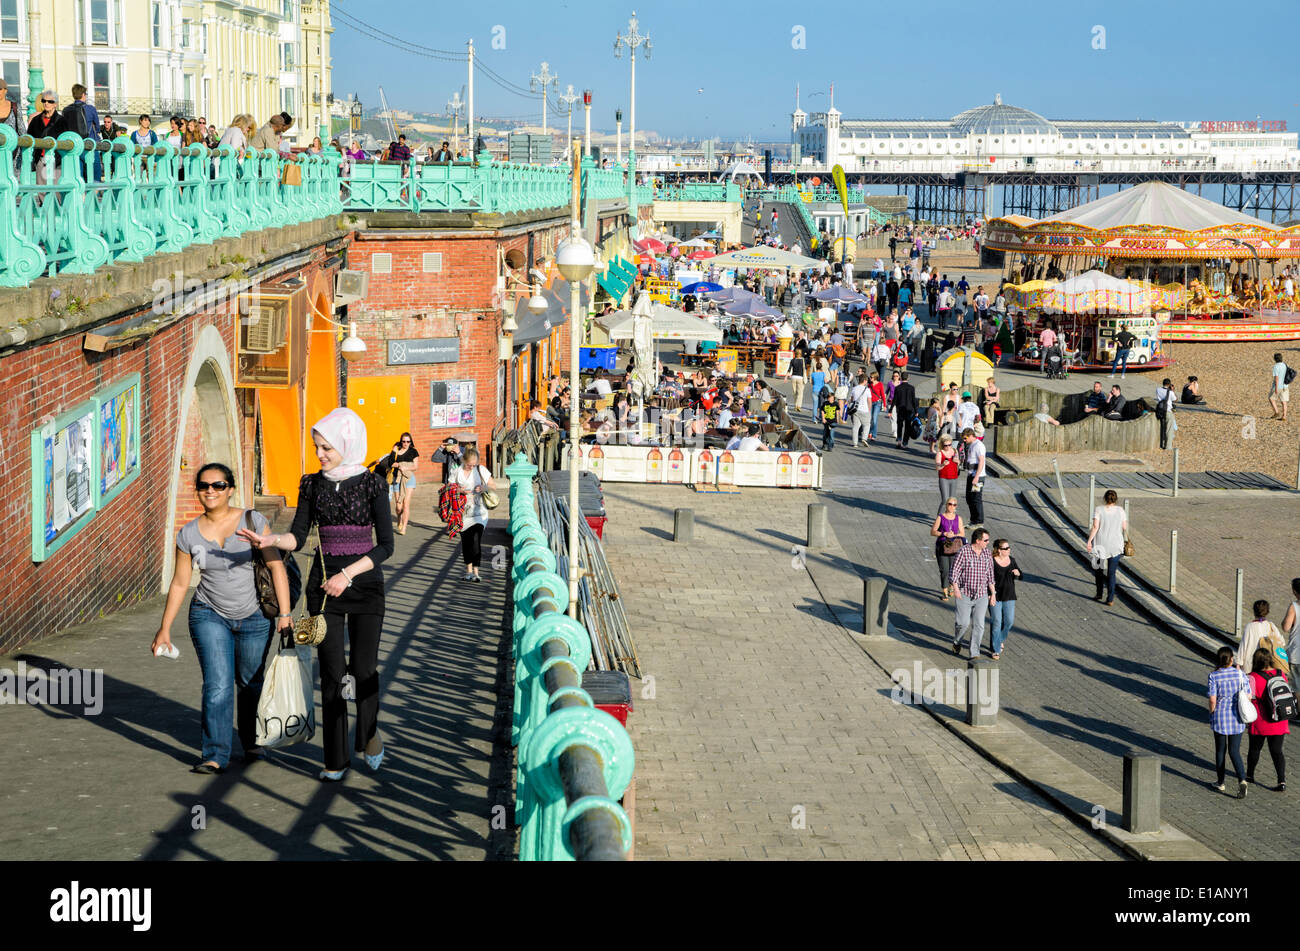 Español ciudad balneario en un cálido día de verano, con multitudes de personas en el paseo marítimo. Brighton frente al mar; el verano; paseo marítimo; Foto de stock